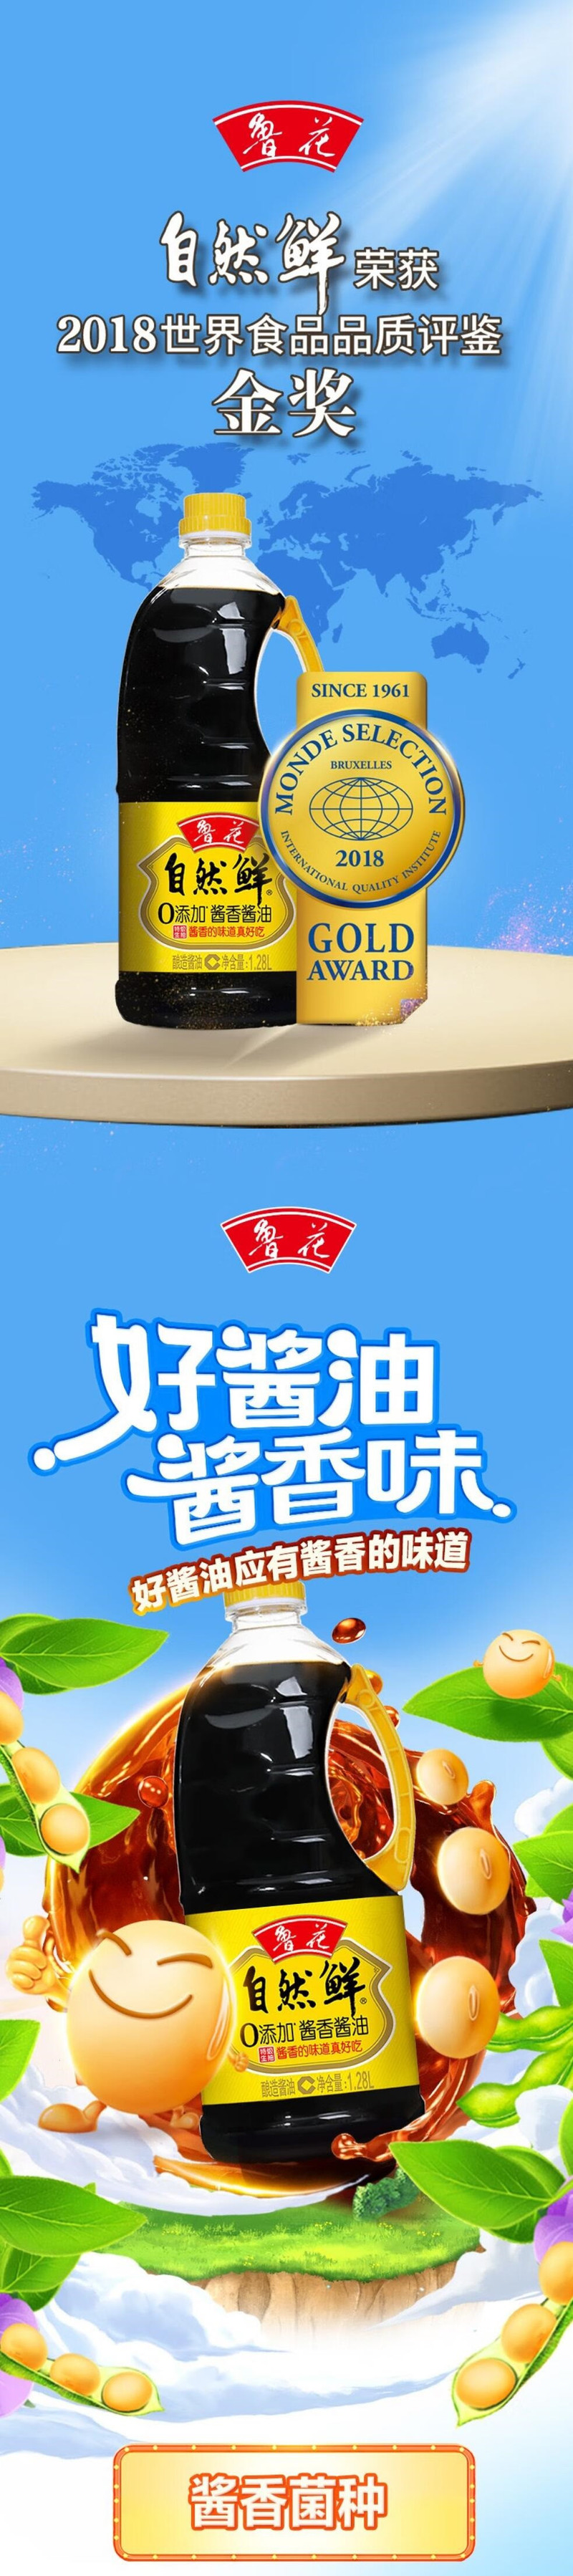 鲁花 【三季上新】鲁花自然鲜酱香酱油+鲁花海鲜蚝油